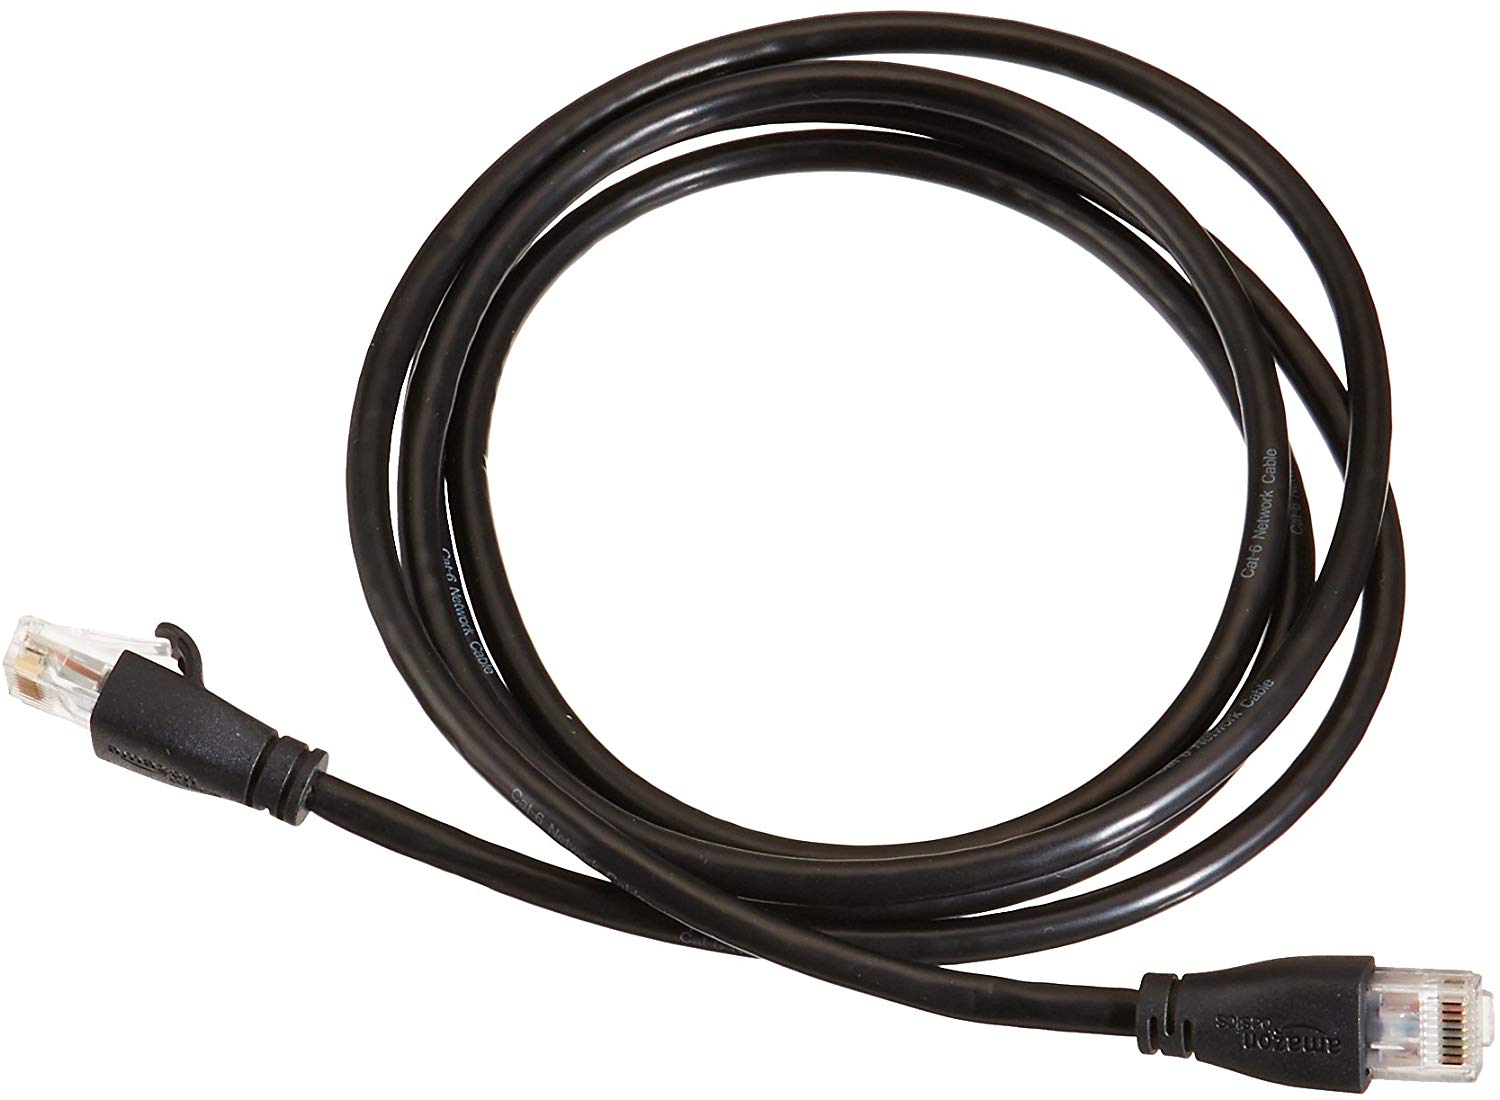 AmazonBasics Ethernet Cable